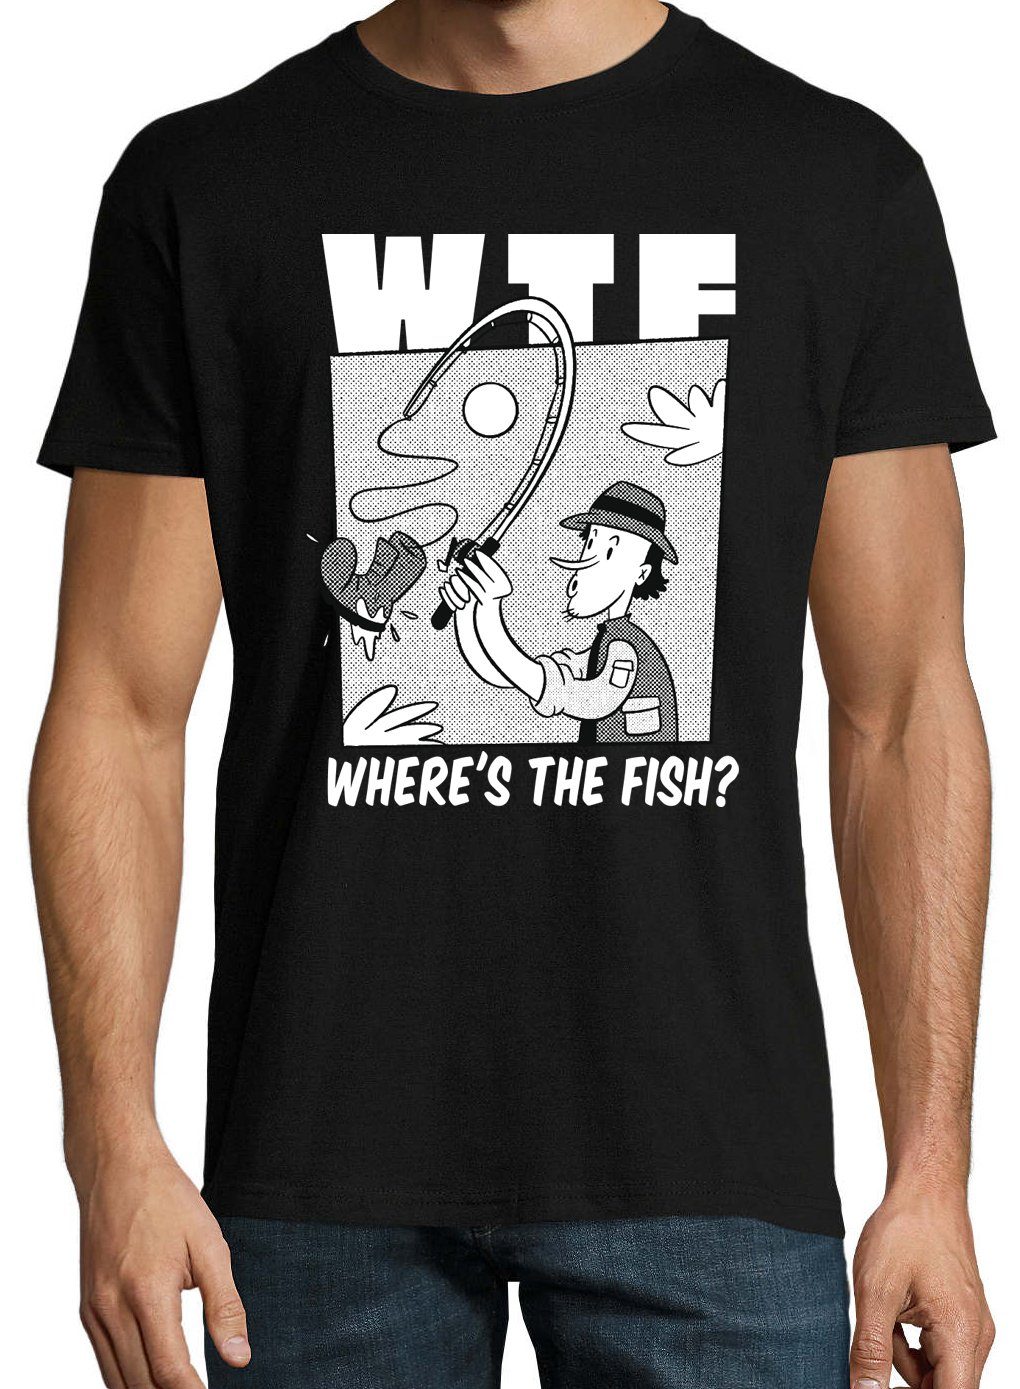 Fish?" Shirt The Youth trendigem Where´s Frontprint Designz Herren Schwarz "WTF T-Shirt mit